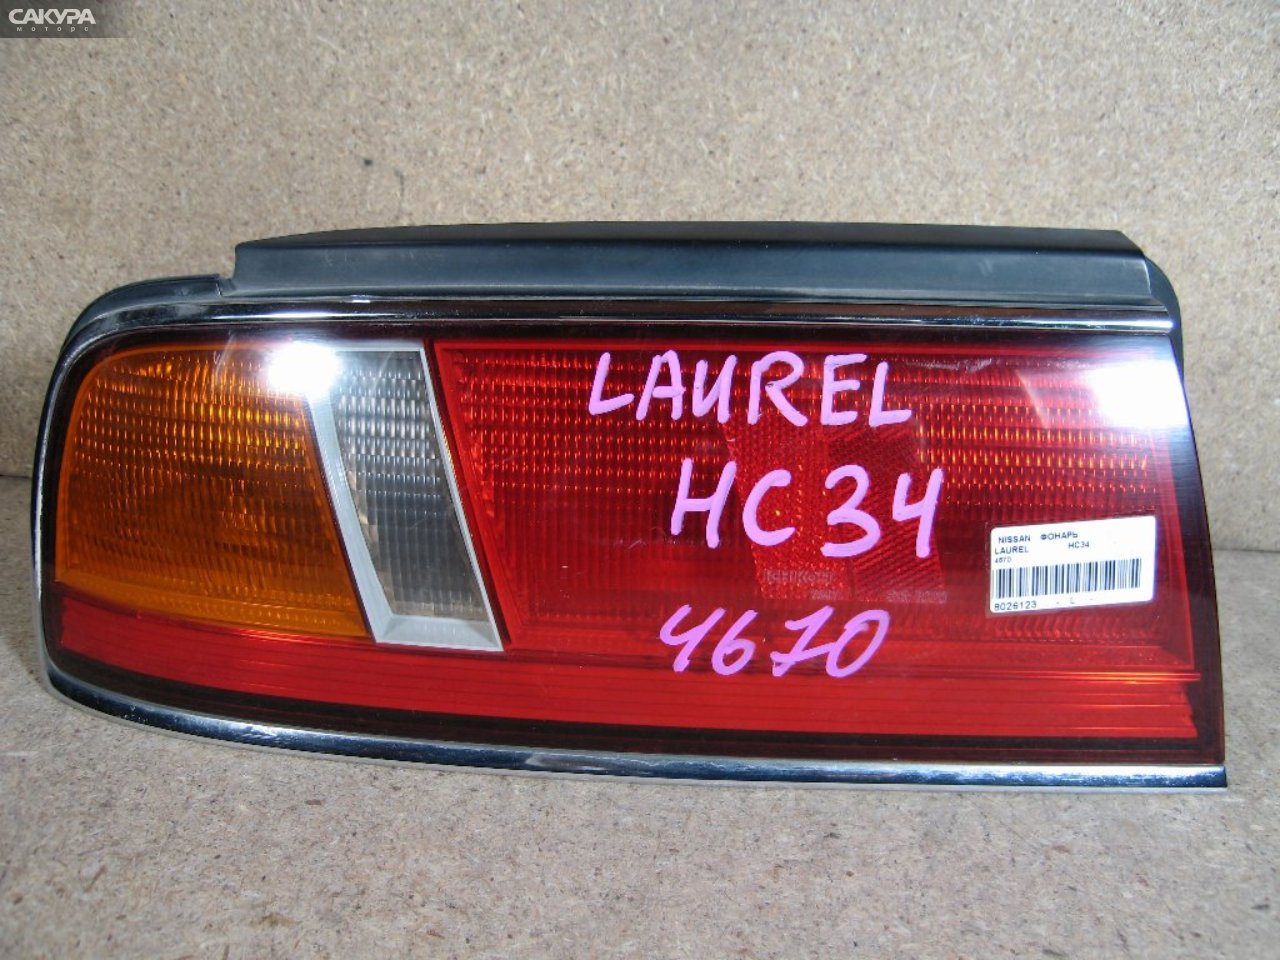 Фонарь стоп-сигнала левый Nissan Laurel HC34 4670: купить в Сакура Абакан.